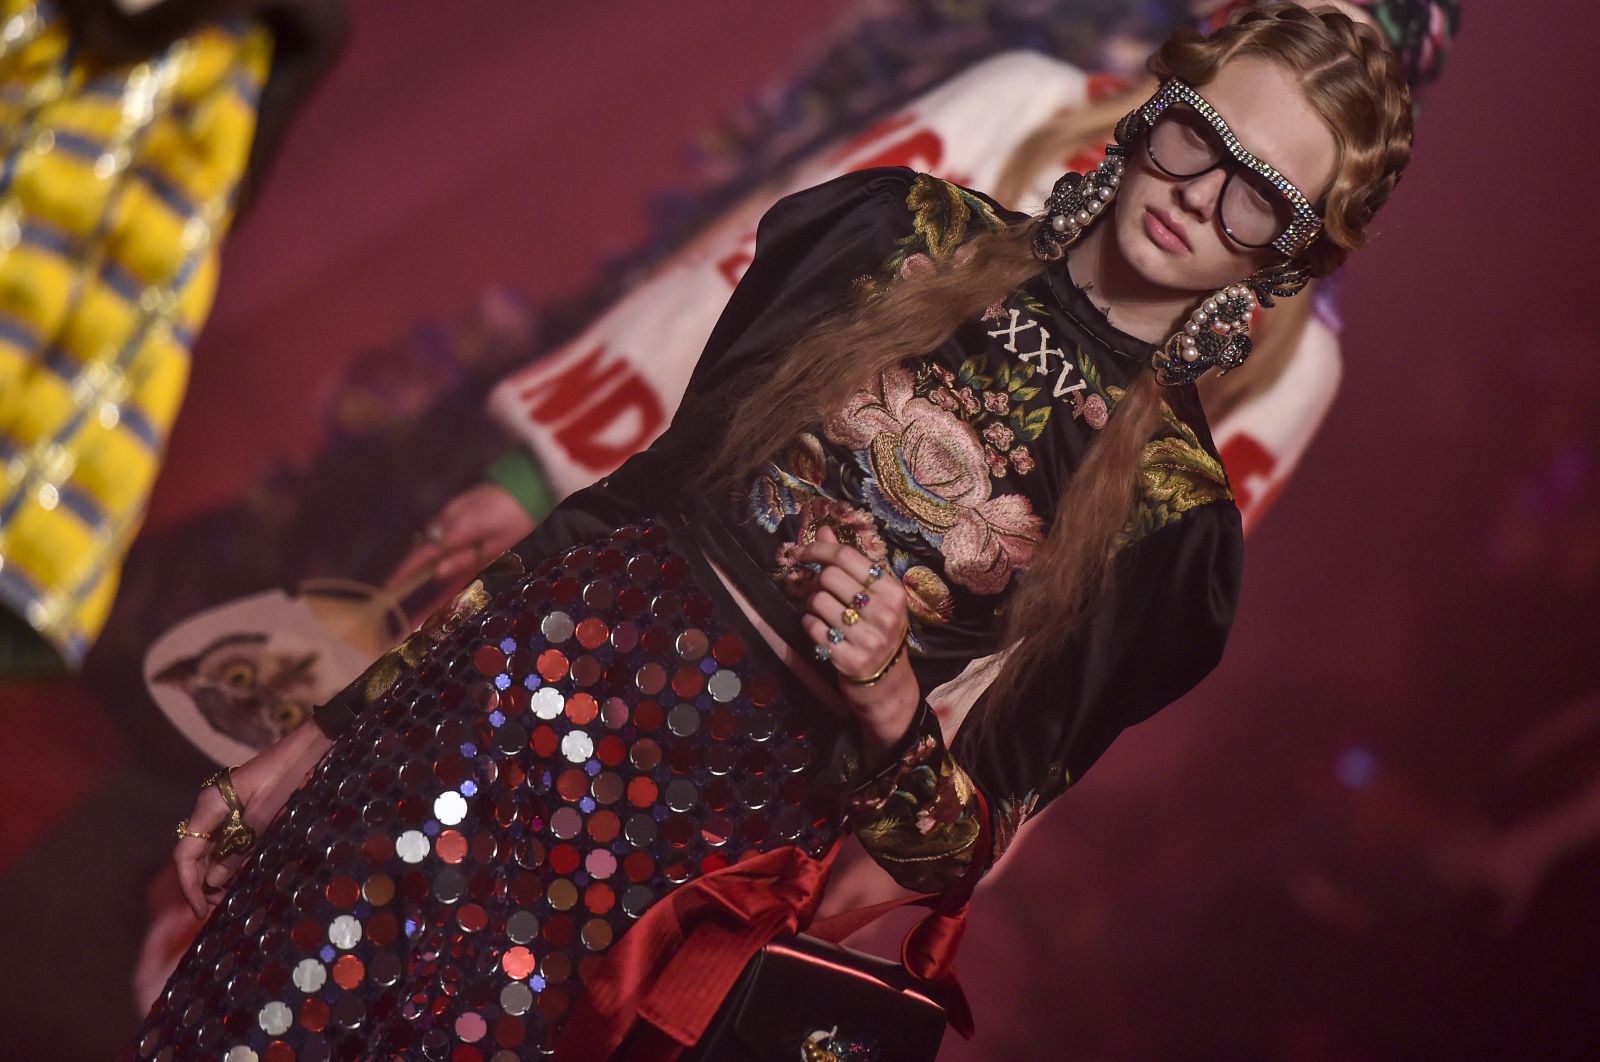 Скарлетт Йоханссон снялась в новом фотосете в роскошных нарядах Gucci и Dolce & Gabbana (ФОТО)